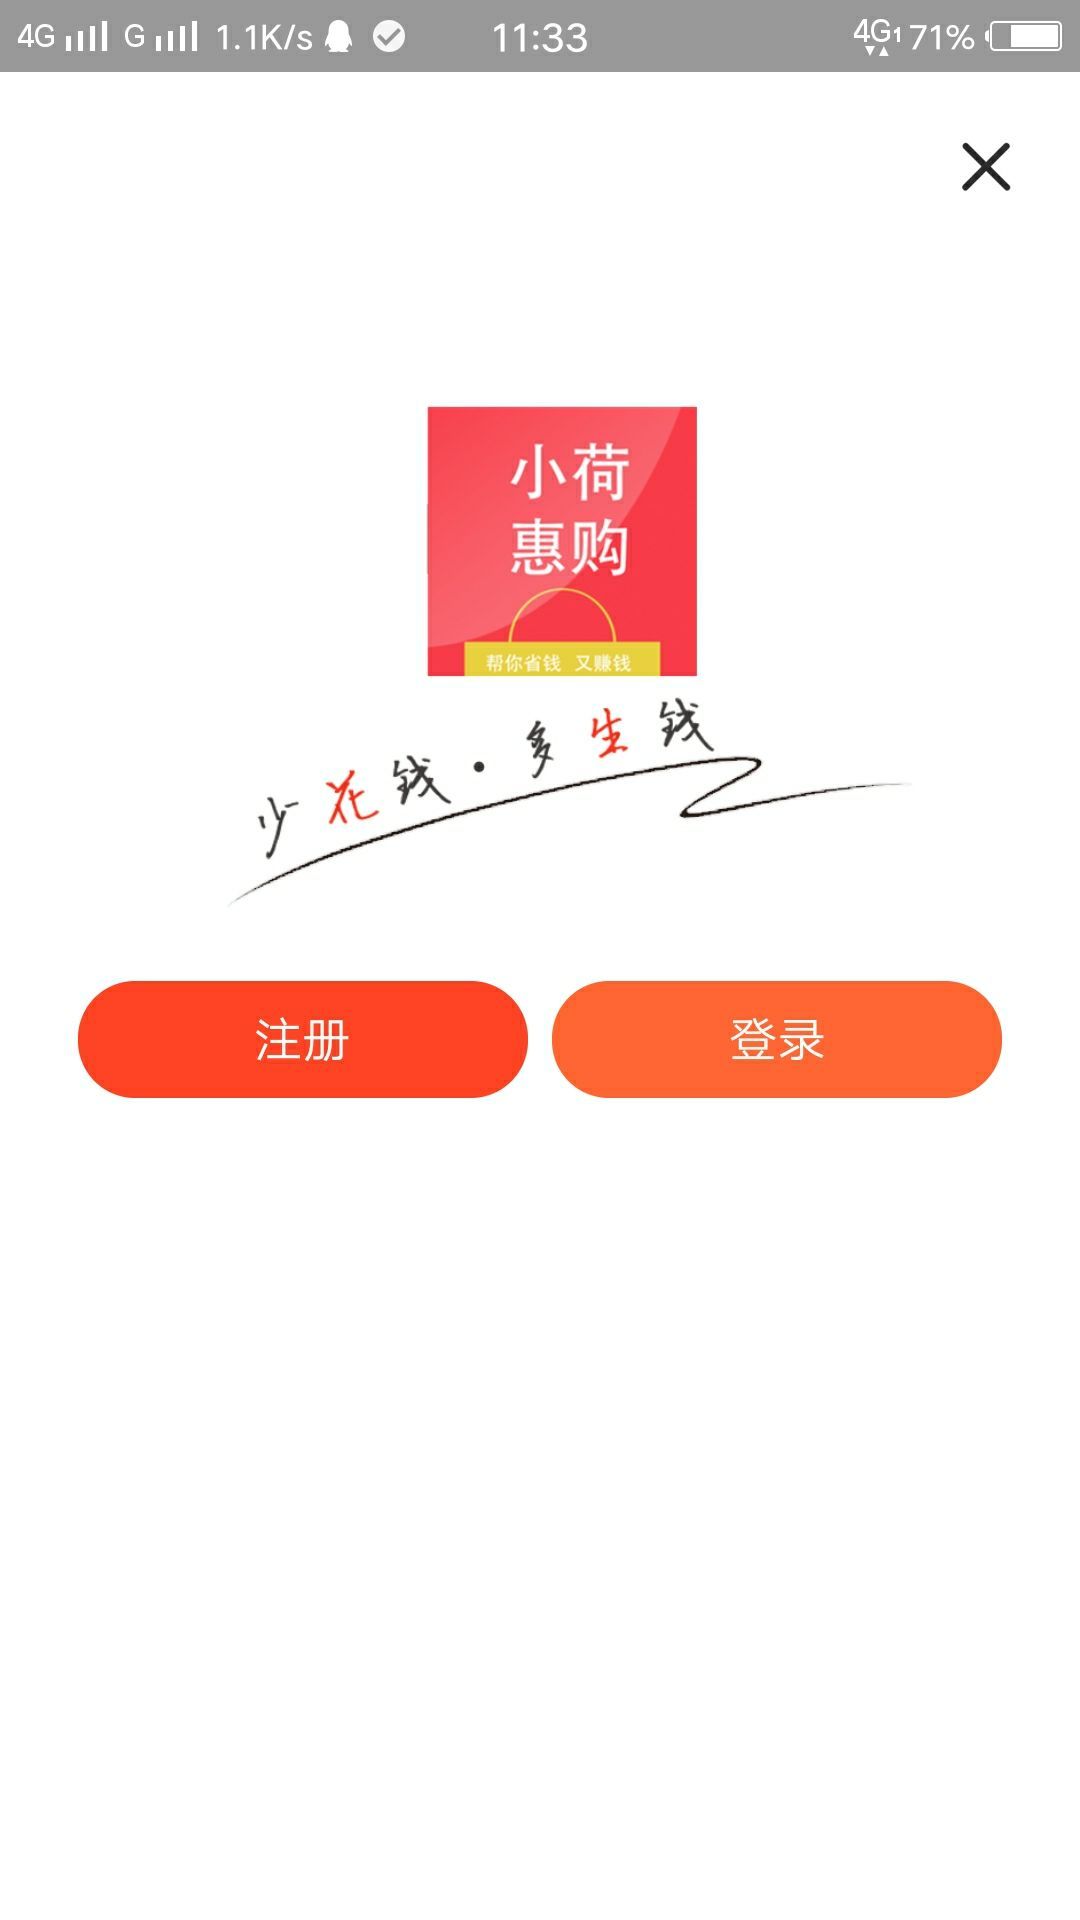 小荷惠购官方手机版下载app客户端图片1